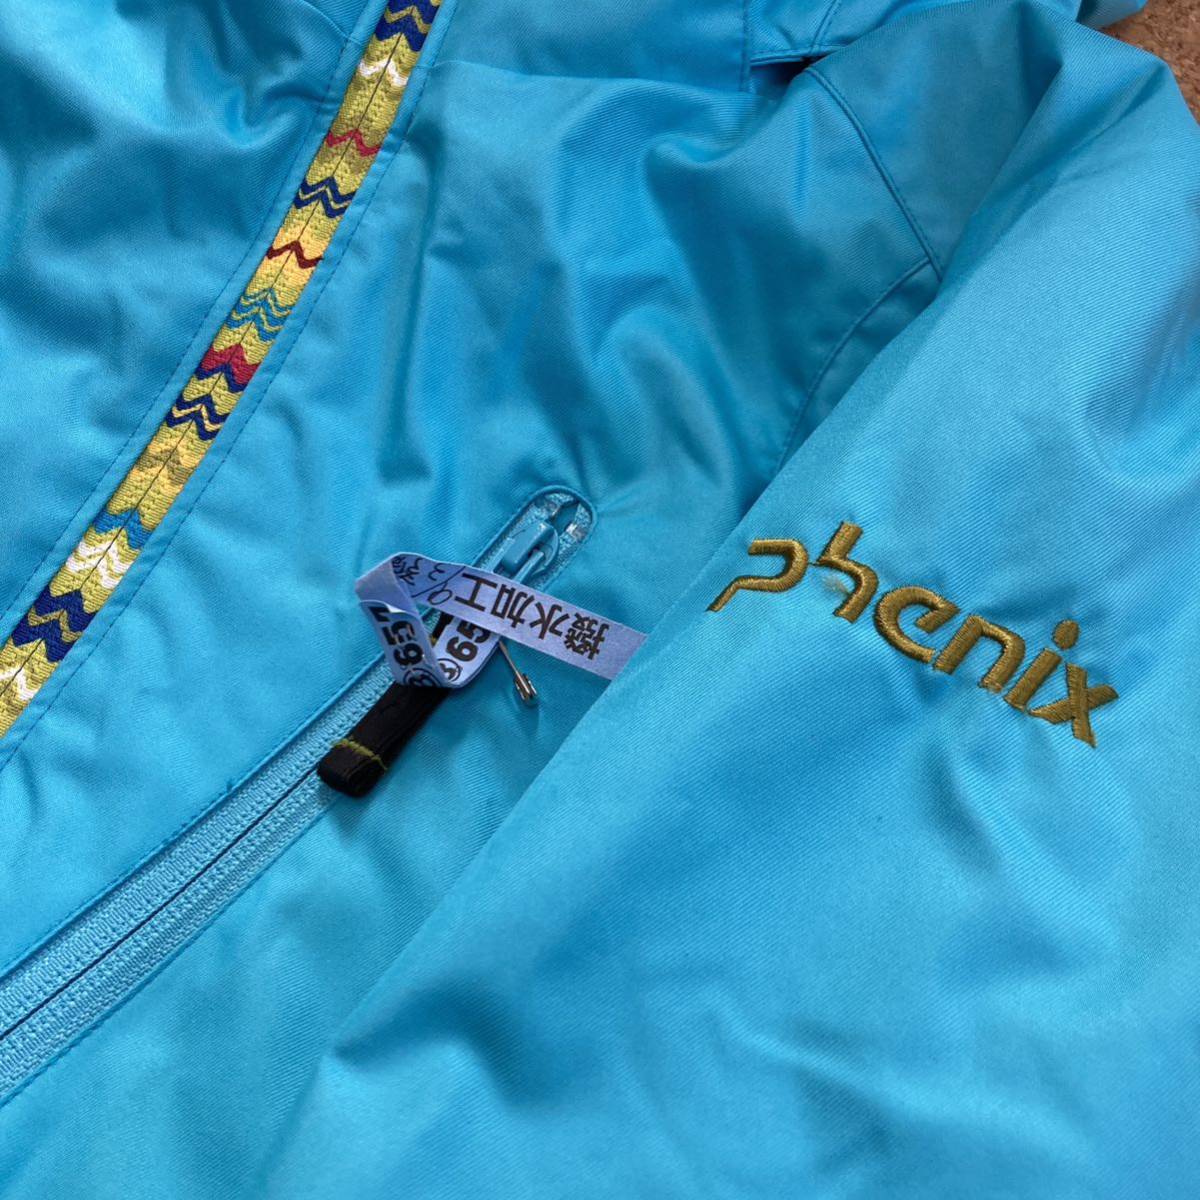 フェニックス phenix スキーウェア 上下 セット 子供 キッズ スノボ スキー スノーボード 160サイズ 青×黒 ジャケット パンツ ウェア _画像2